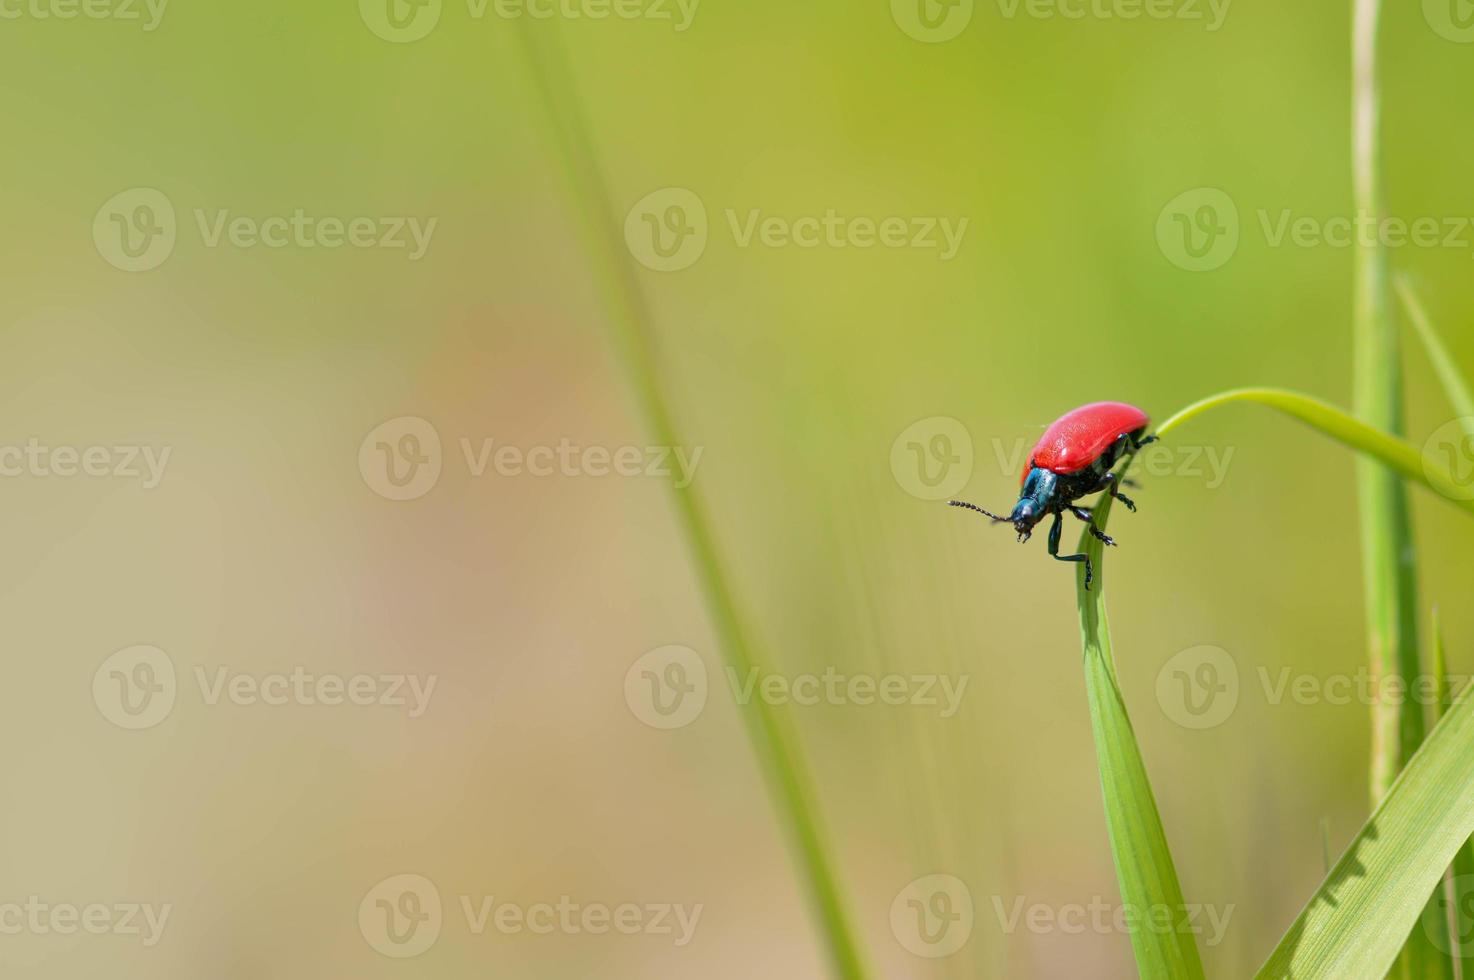 Lilienkäfer, kleiner roter Käfer in der Natur auf einem Blatt foto